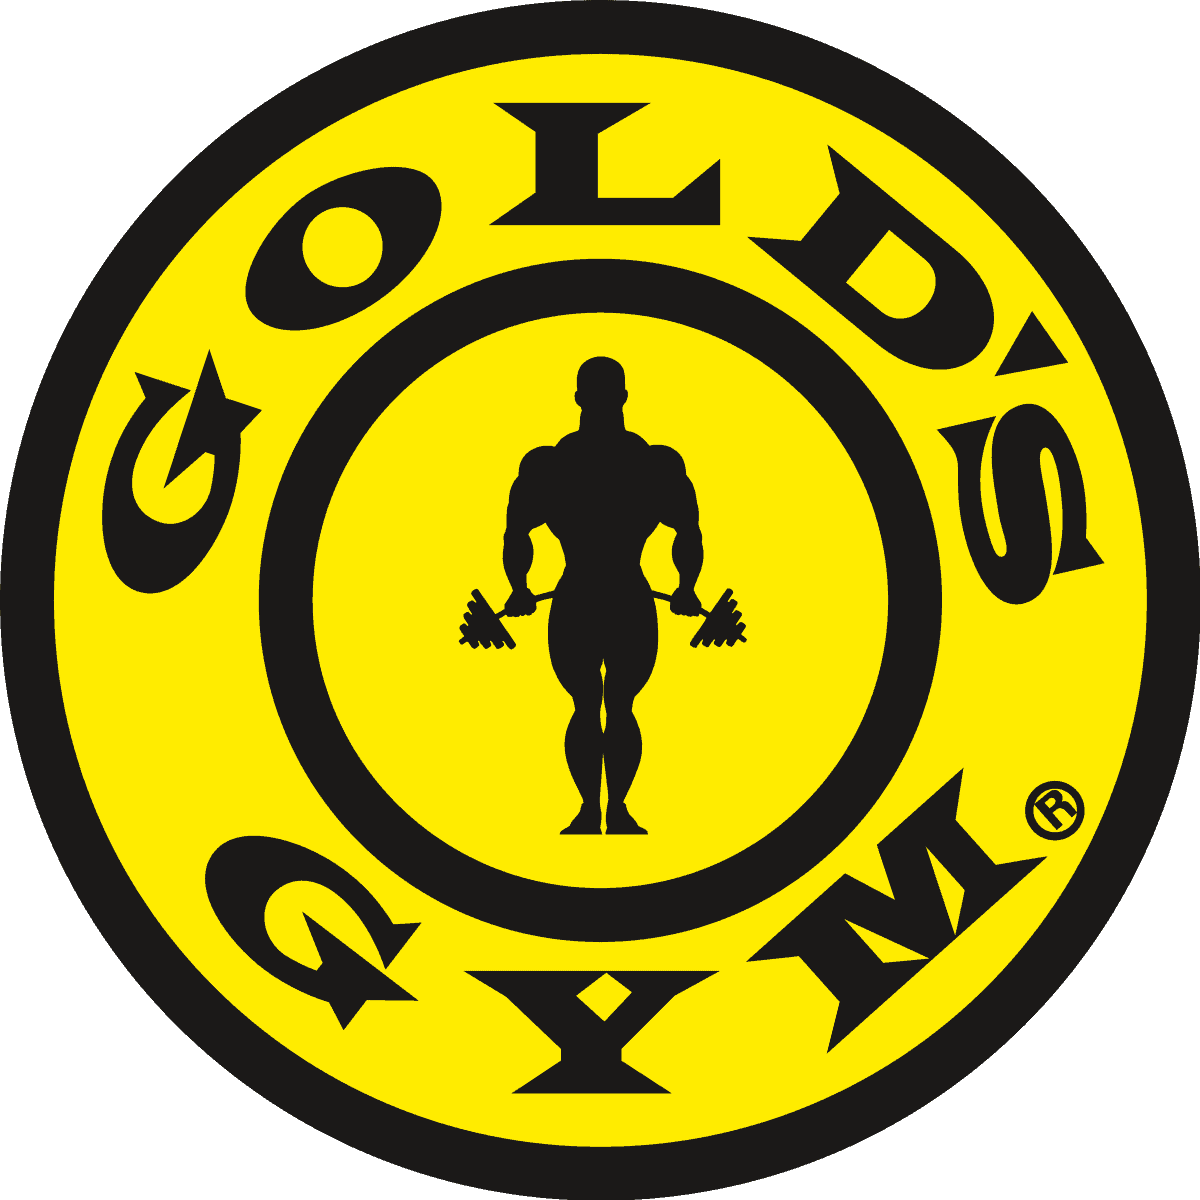 Gold's Gym Membership logo